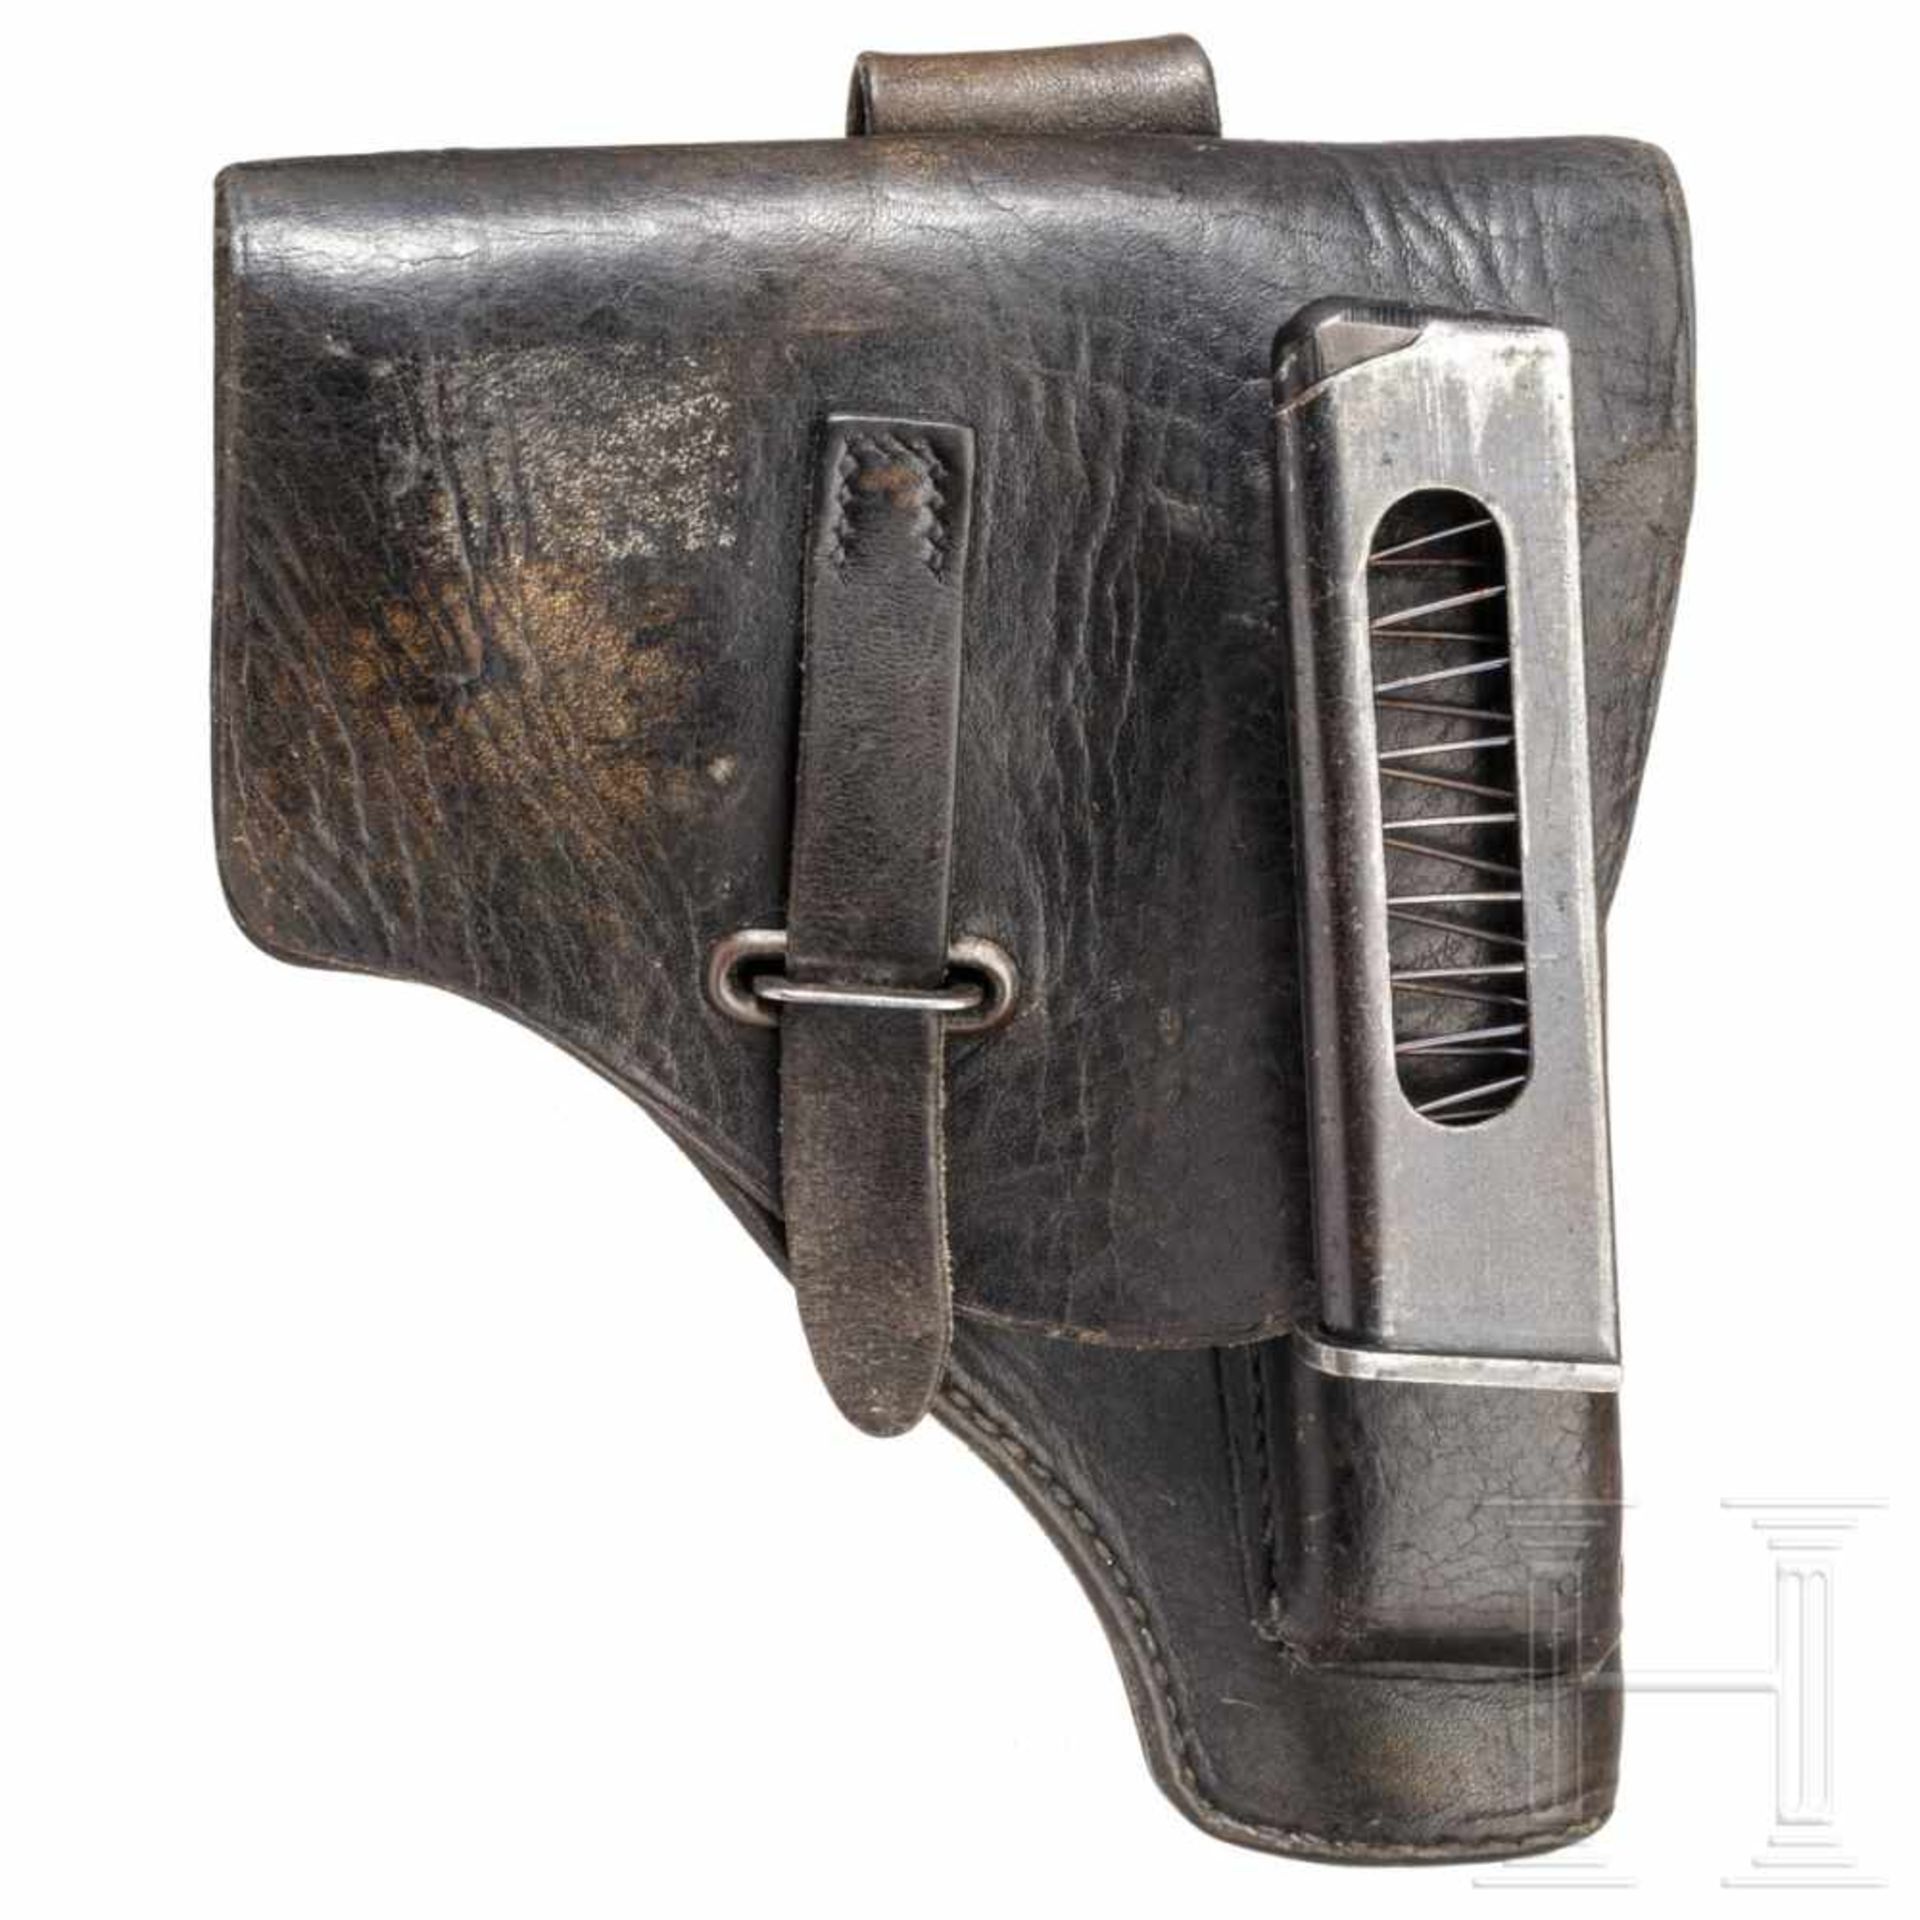 Beretta Mod. 35, mit TascheKal. 7,65 mm Brown., Nr. 560300, Nummerngleich. Blanker Lauf. - Bild 3 aus 4